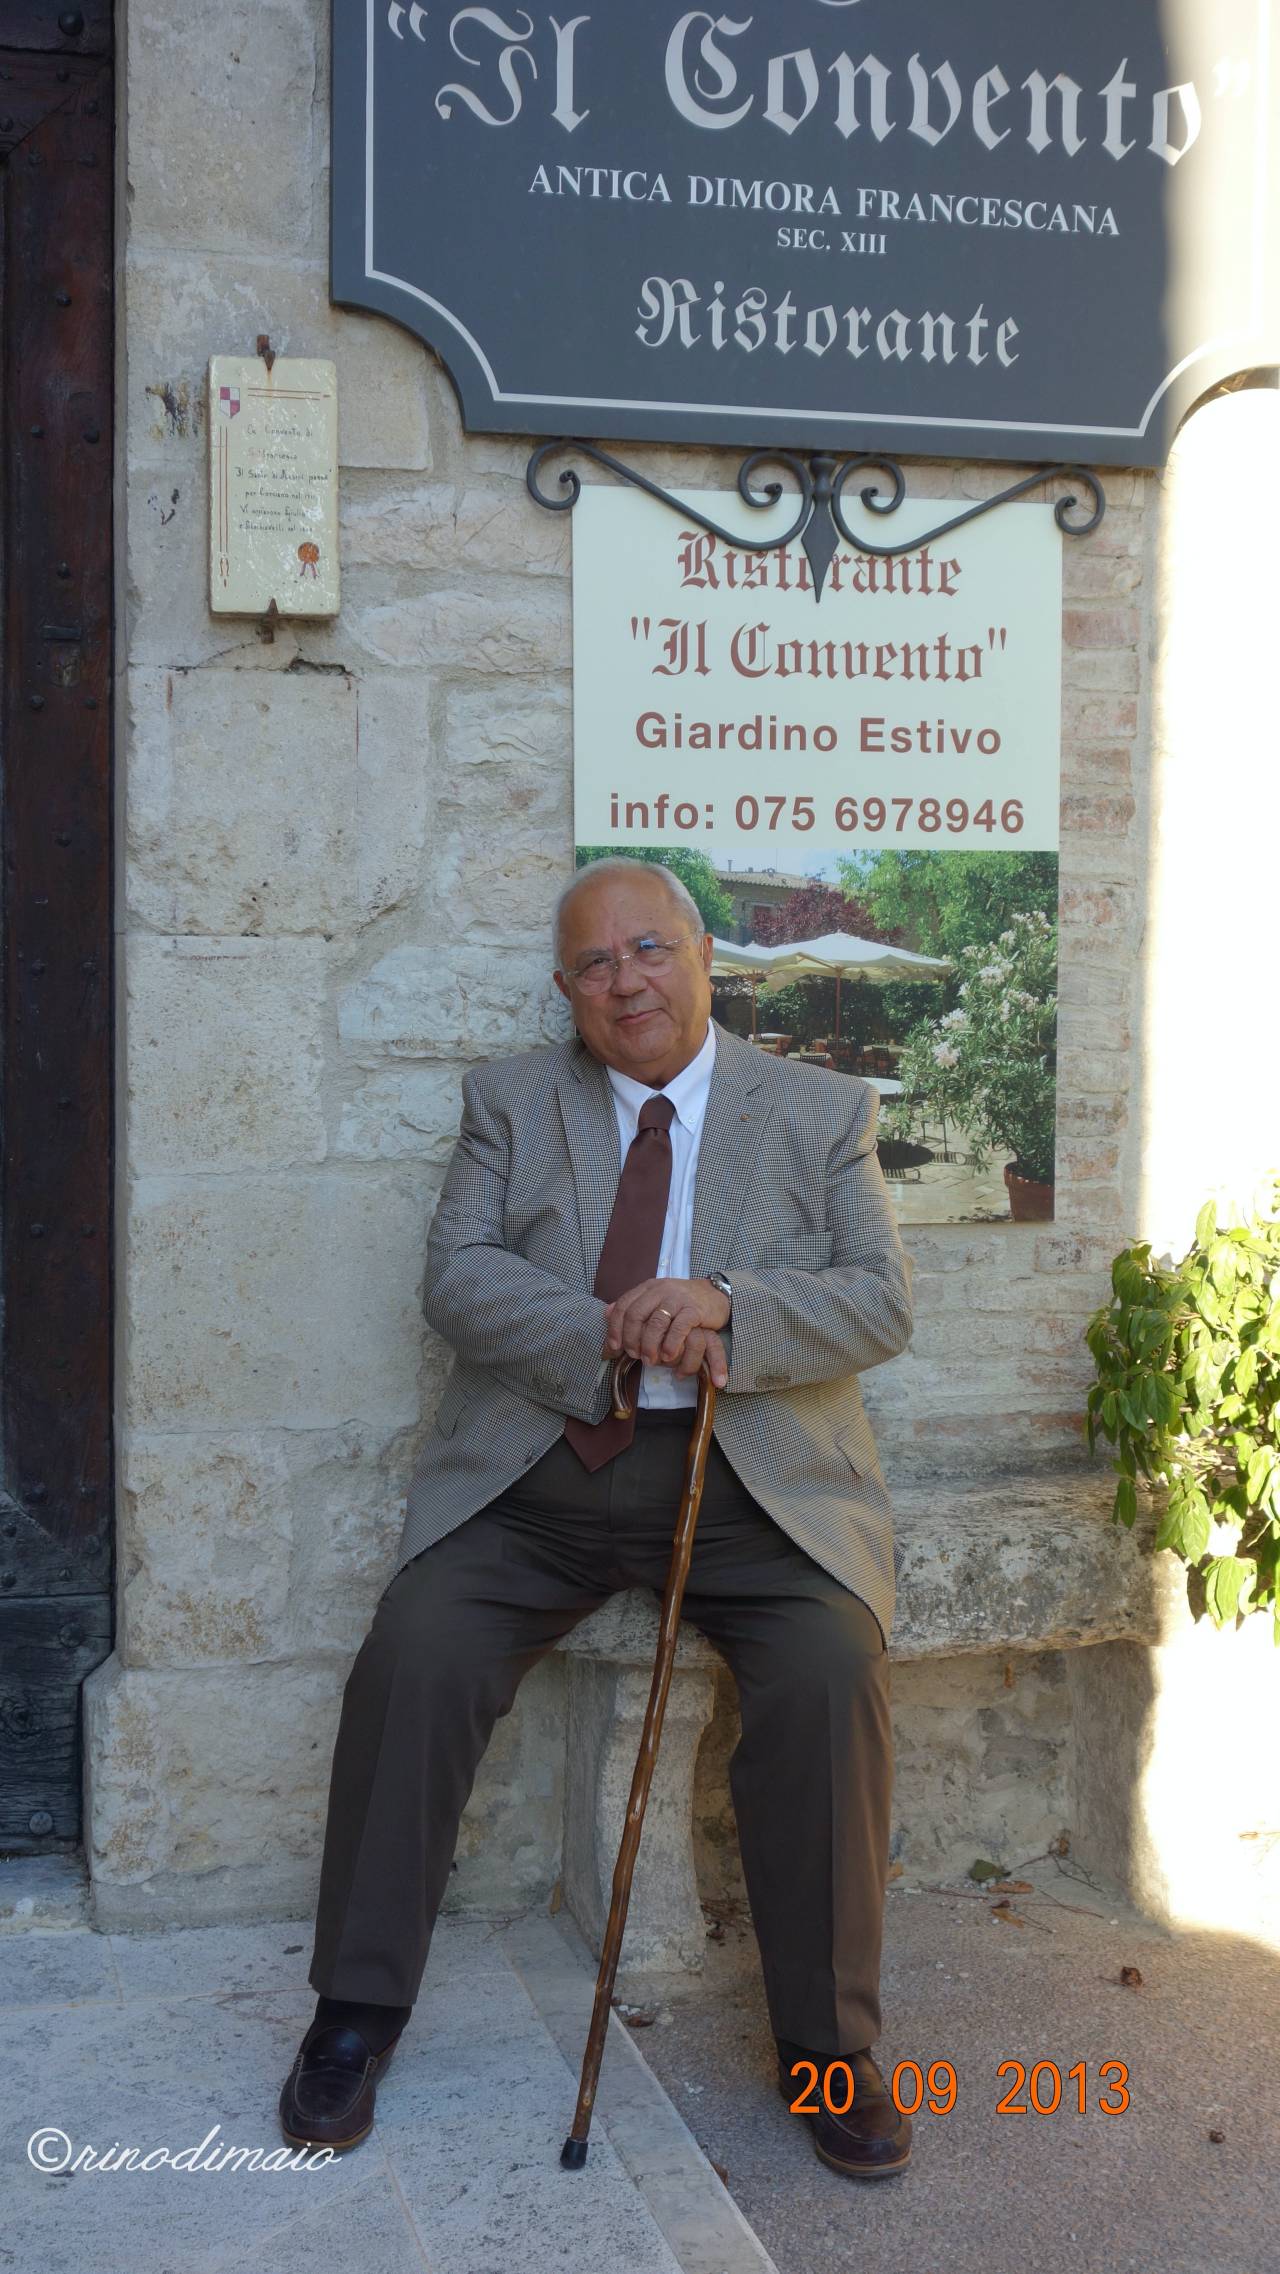 ©rinodimaio-Rotary visita mostra Perugino 20 settembre 2013-n.03